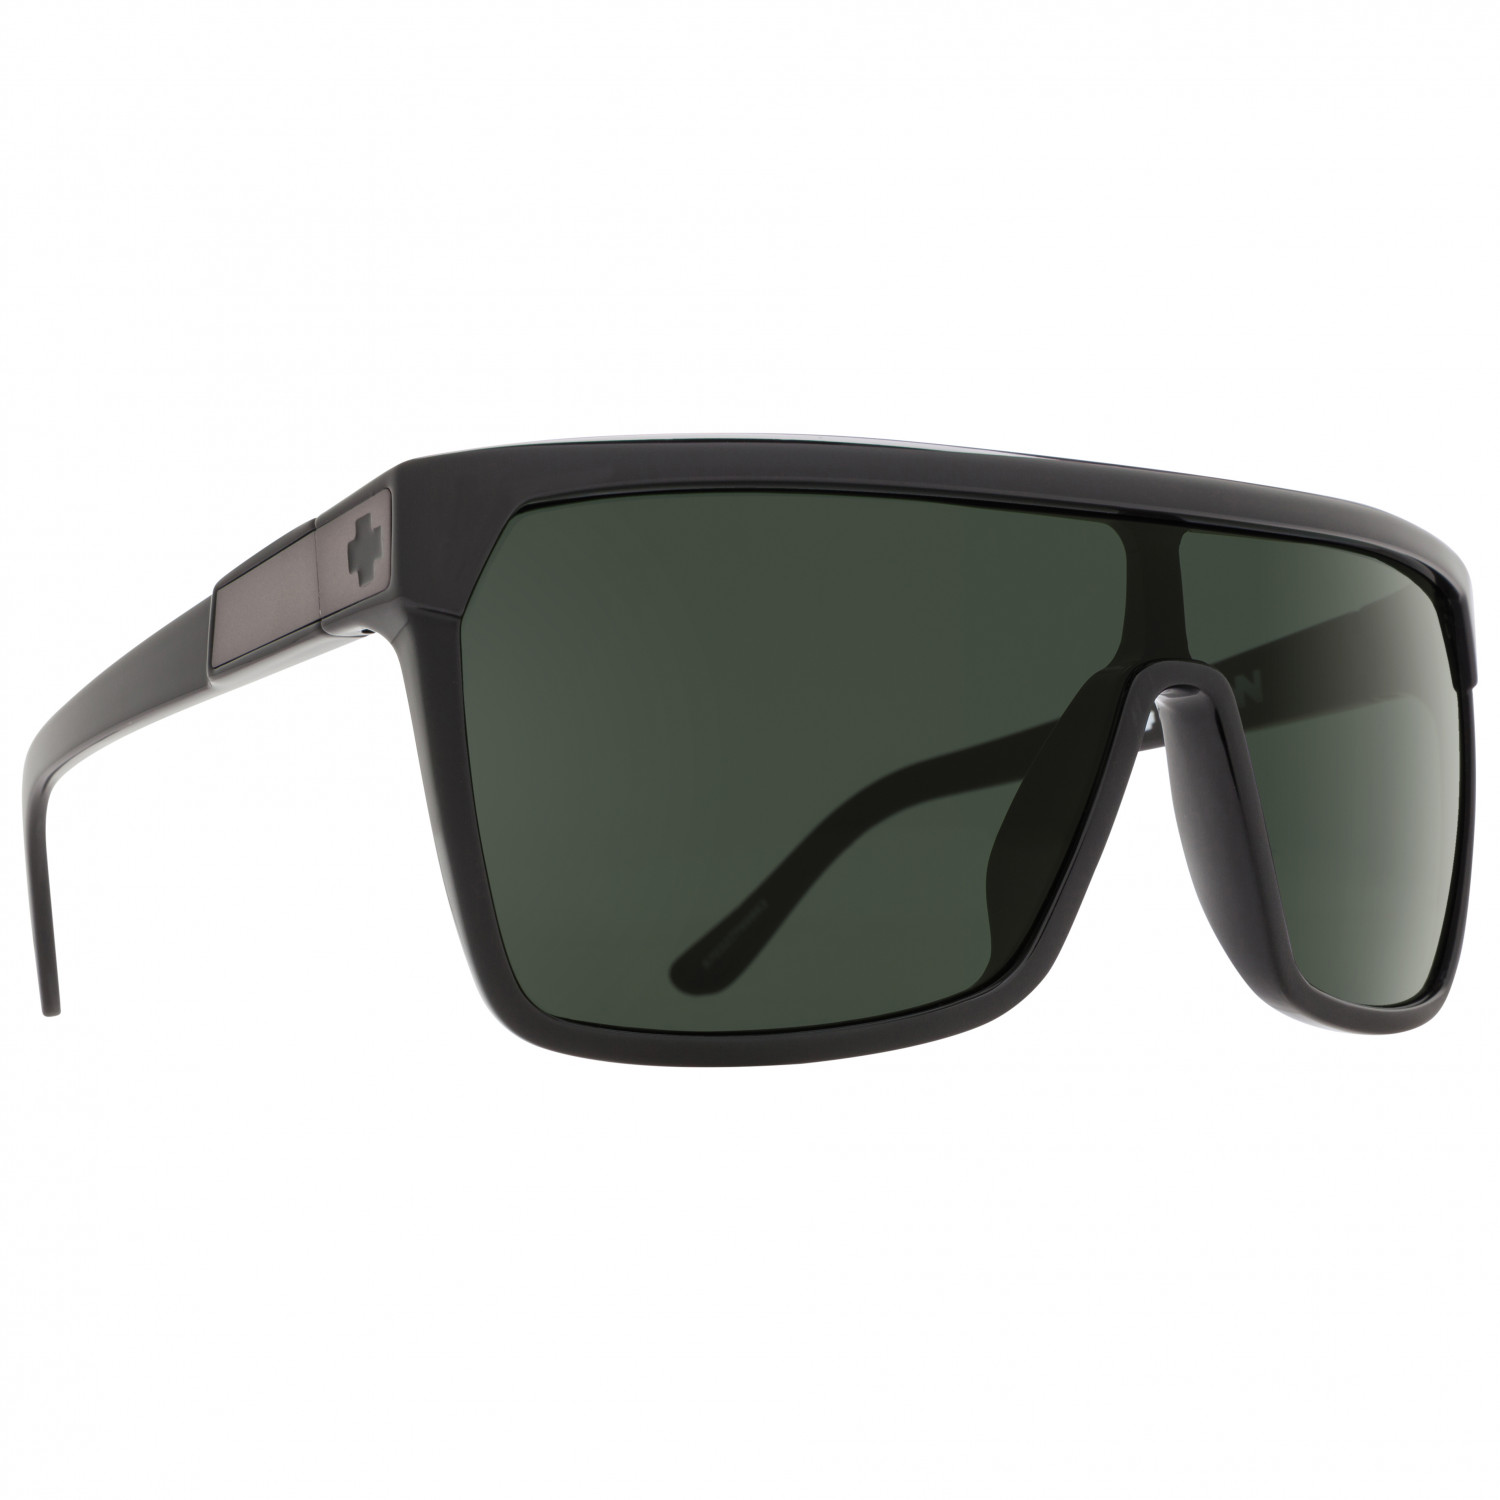 цена Солнцезащитные очки Spy+ Flynn S3 (VLT 15%), цвет Black/Matte Black